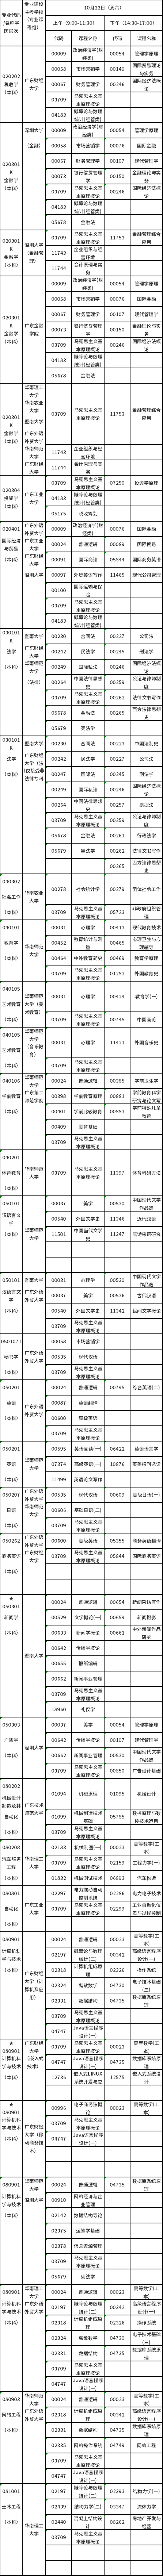 广东2022年10月22日自考专业及考试科目一览表